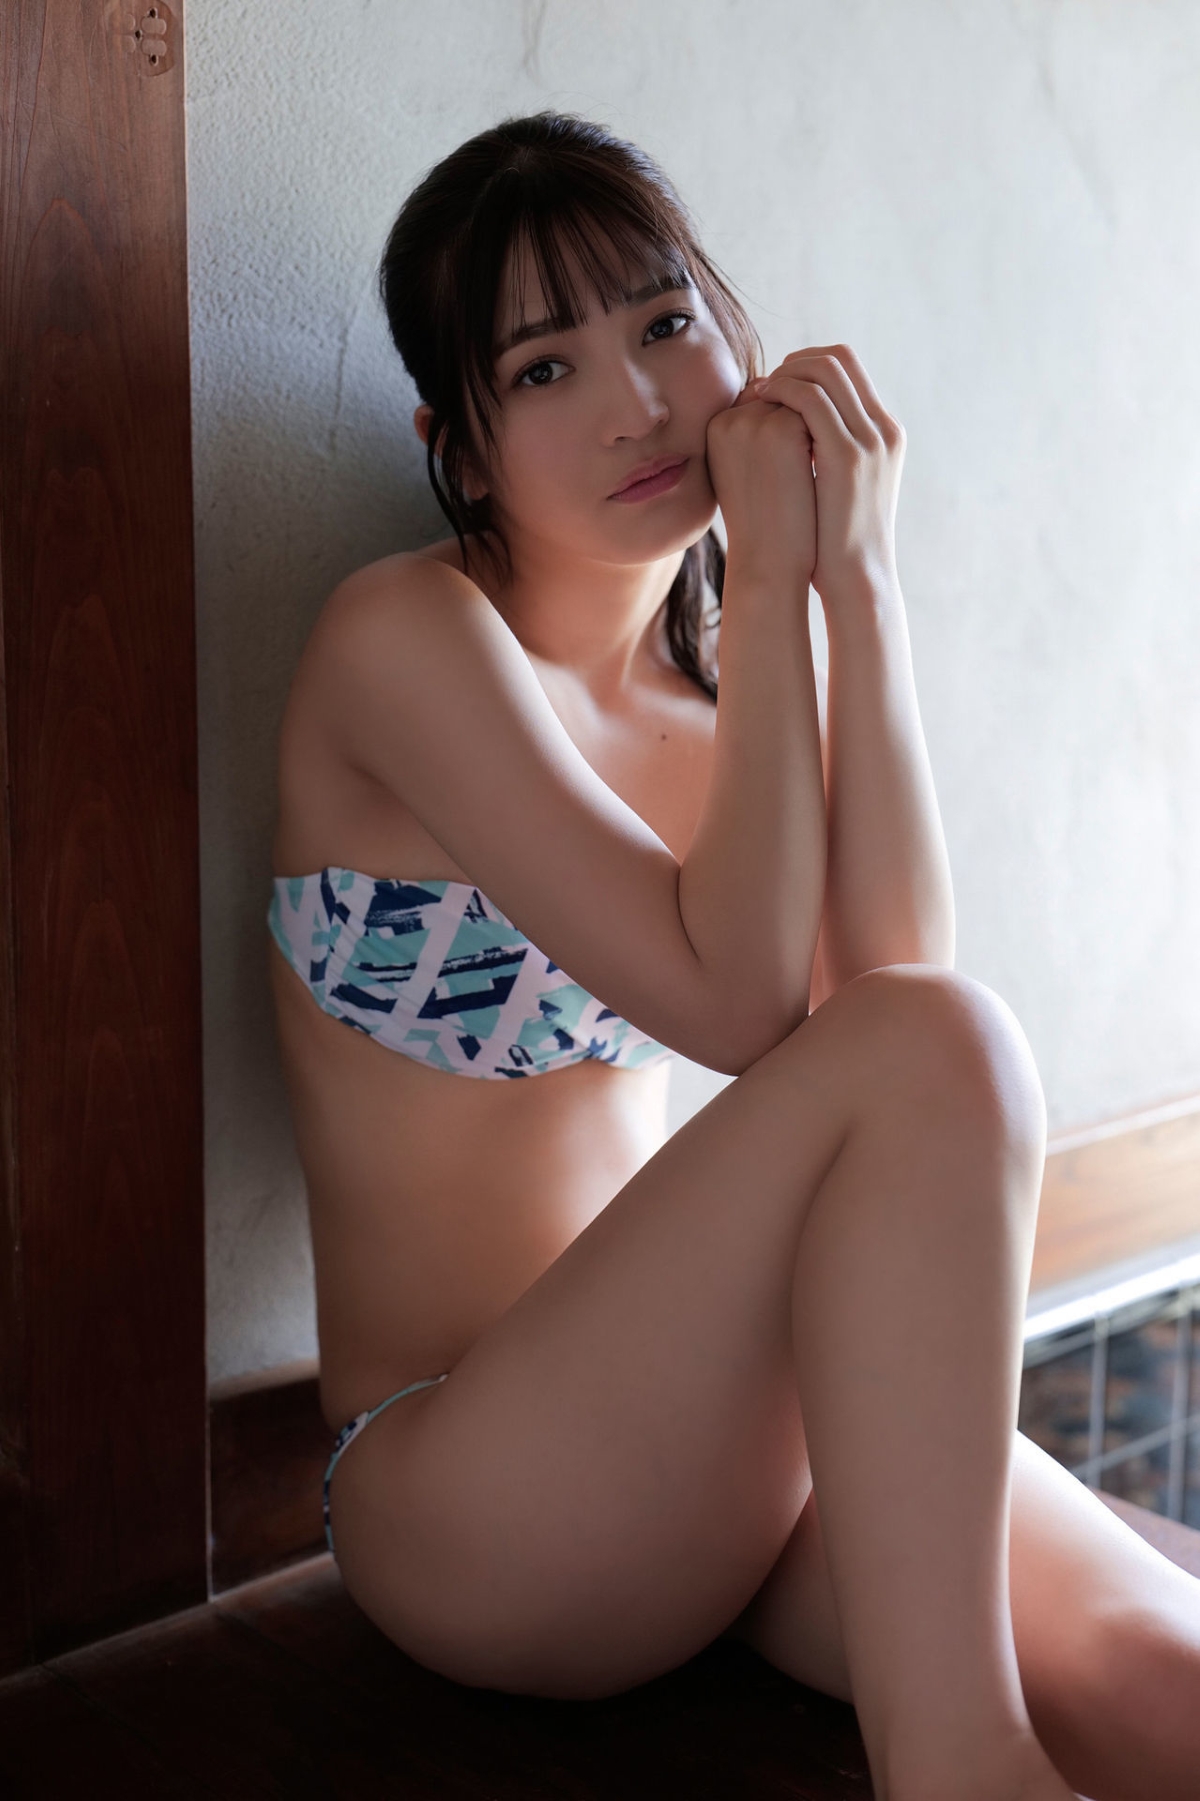 FRIDAYデジタル写真集 Digital Photobook 2023 01 27 Nanako Kurosaki 黒嵜菜々子 Nihon Ichi Buzz tteru Bikini Vol 2 0056 7569129525.jpg